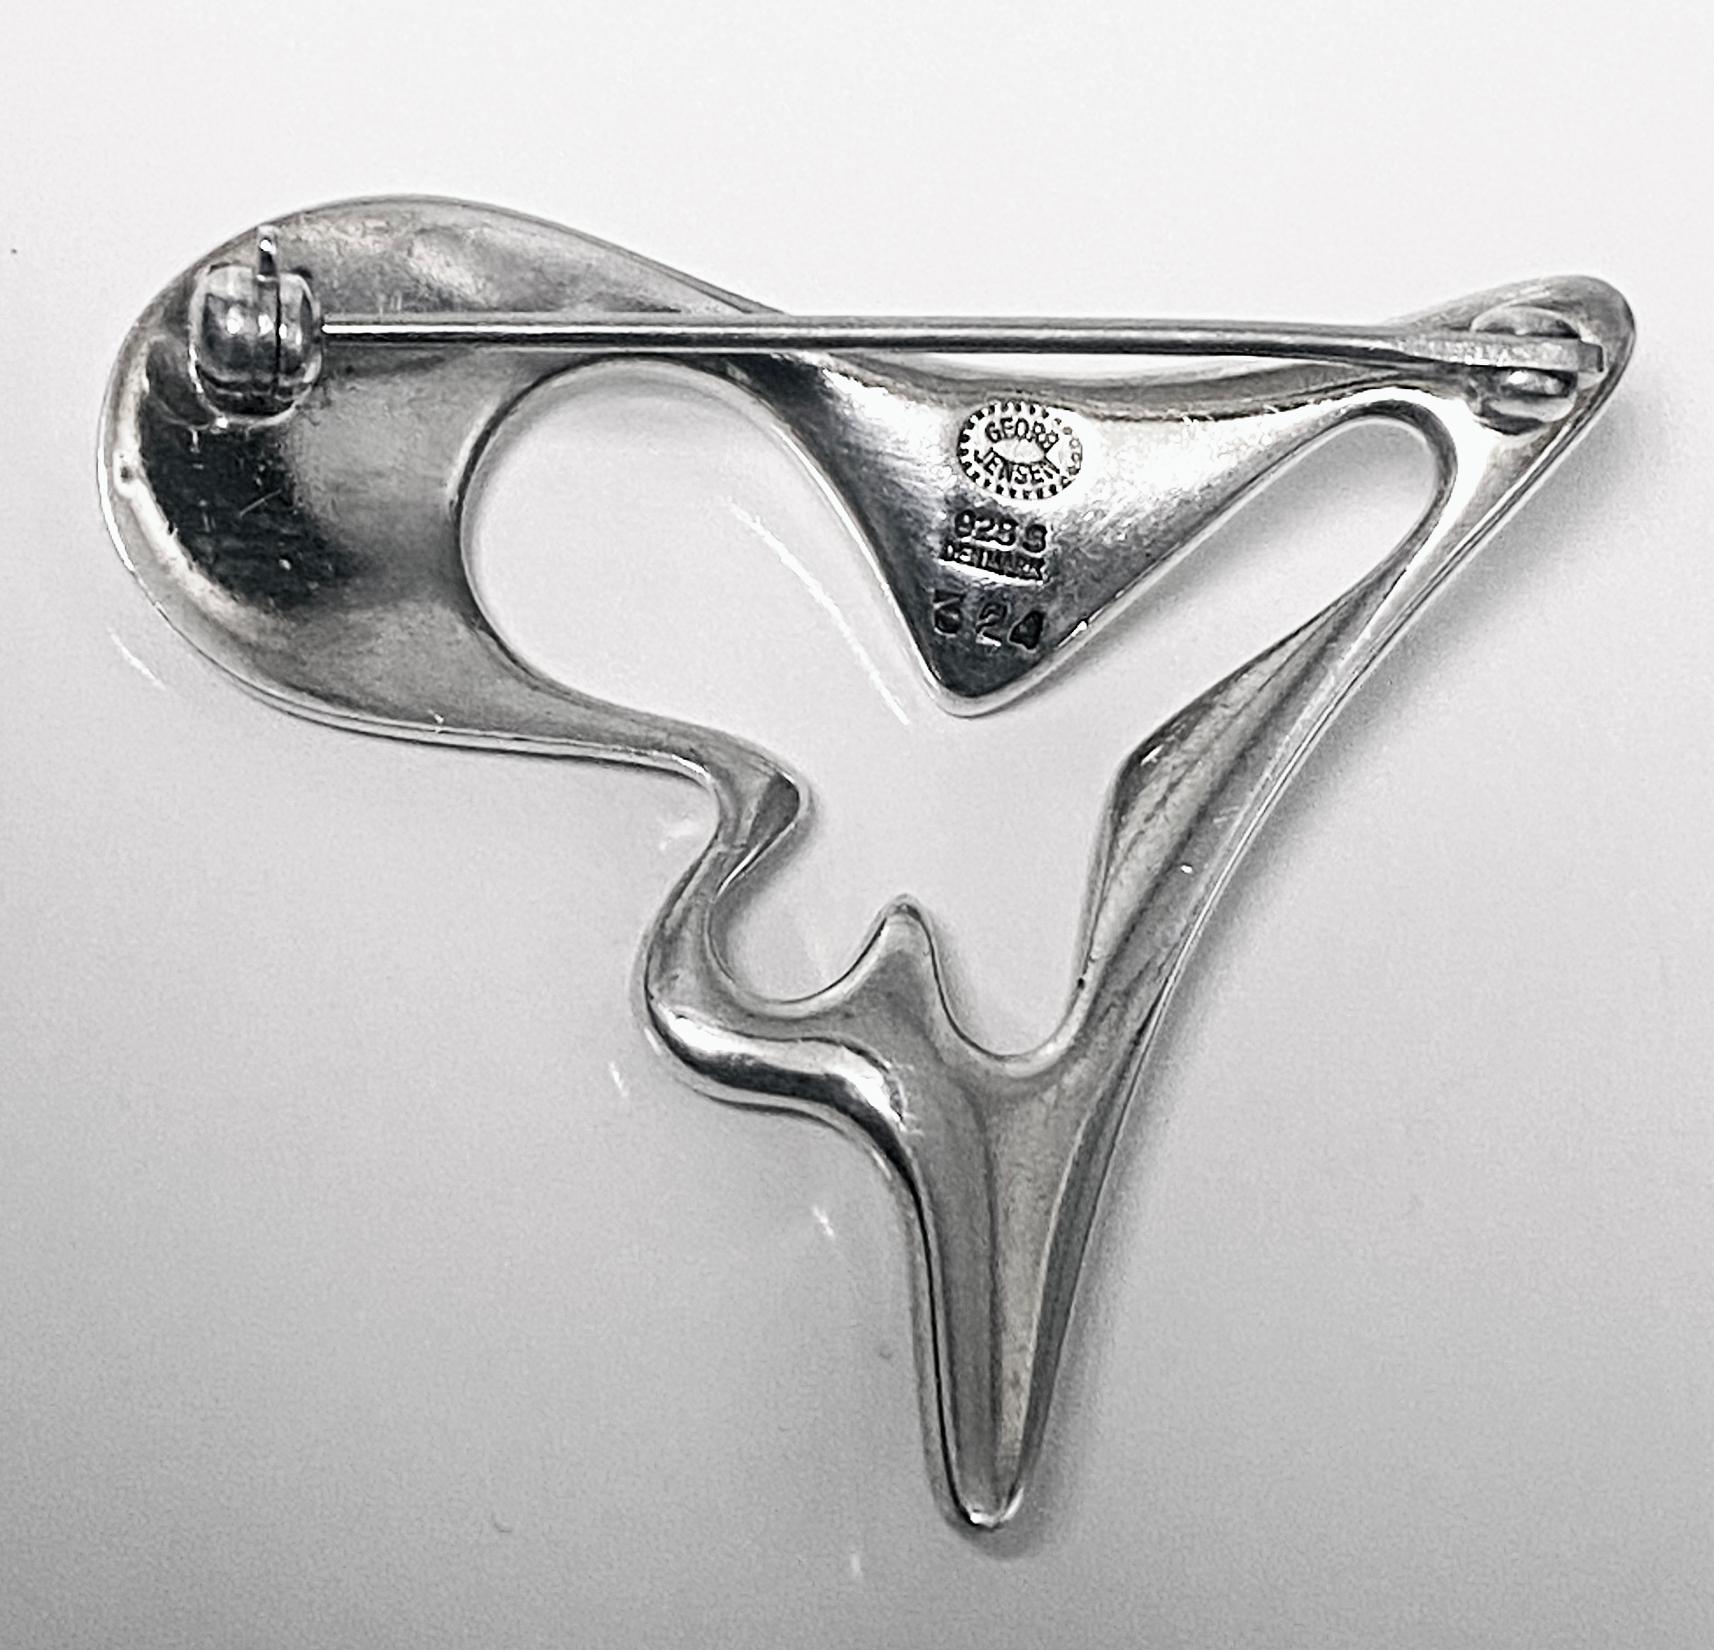 Women's or Men's Georg Jensen Sterling Silver brooch, design #324 by Henning Koppel